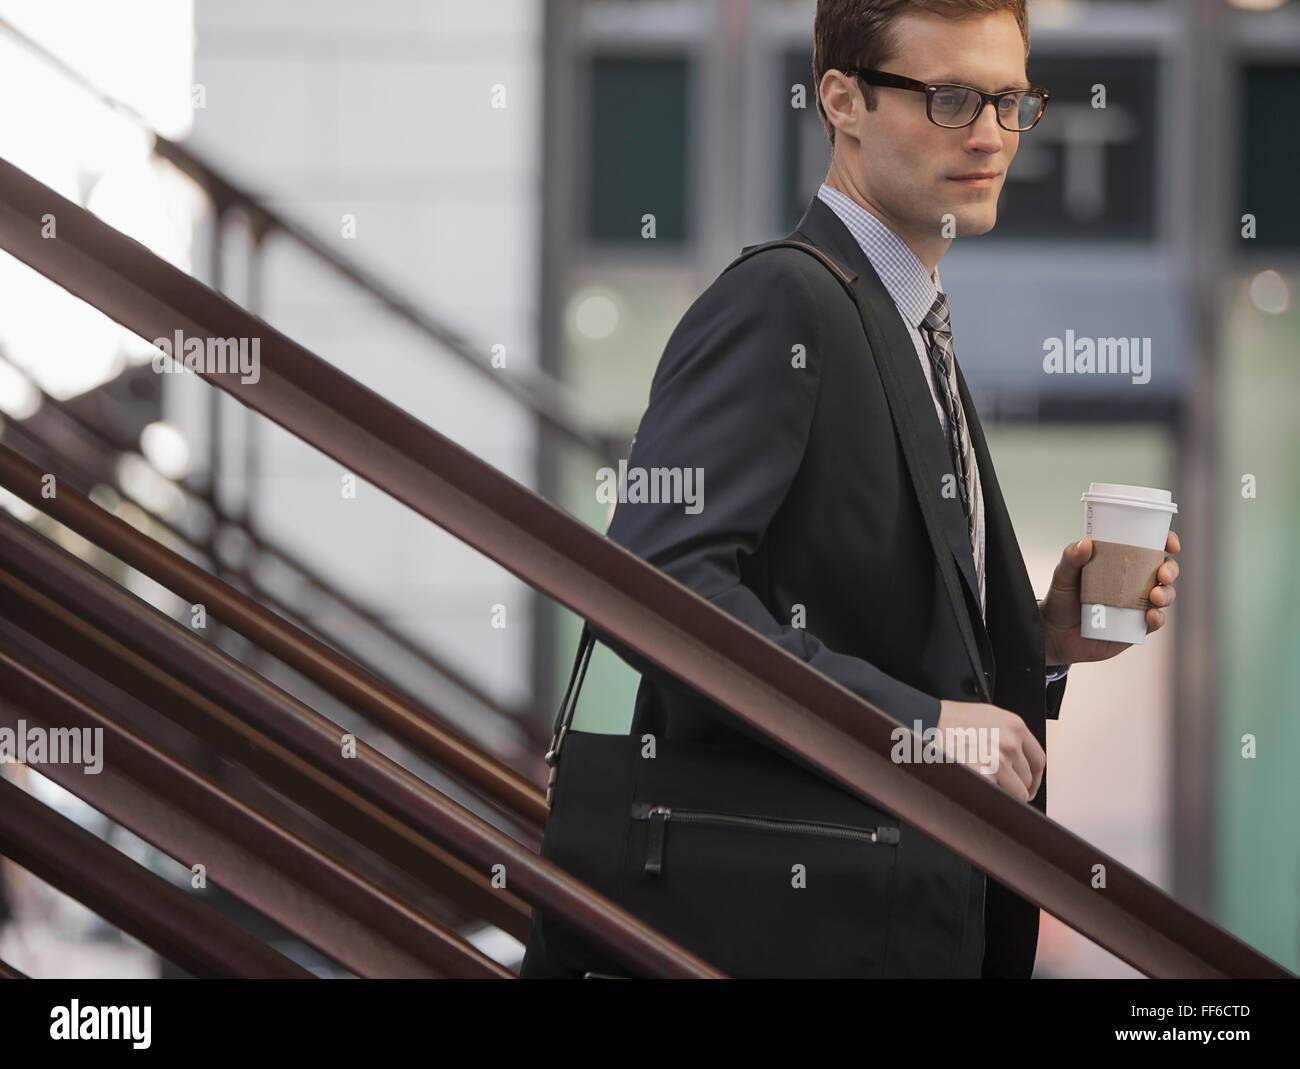 Une journée de travail. Un homme d'affaires en costume et cravate travail walking down steps tenant une tasse de café. Banque D'Images